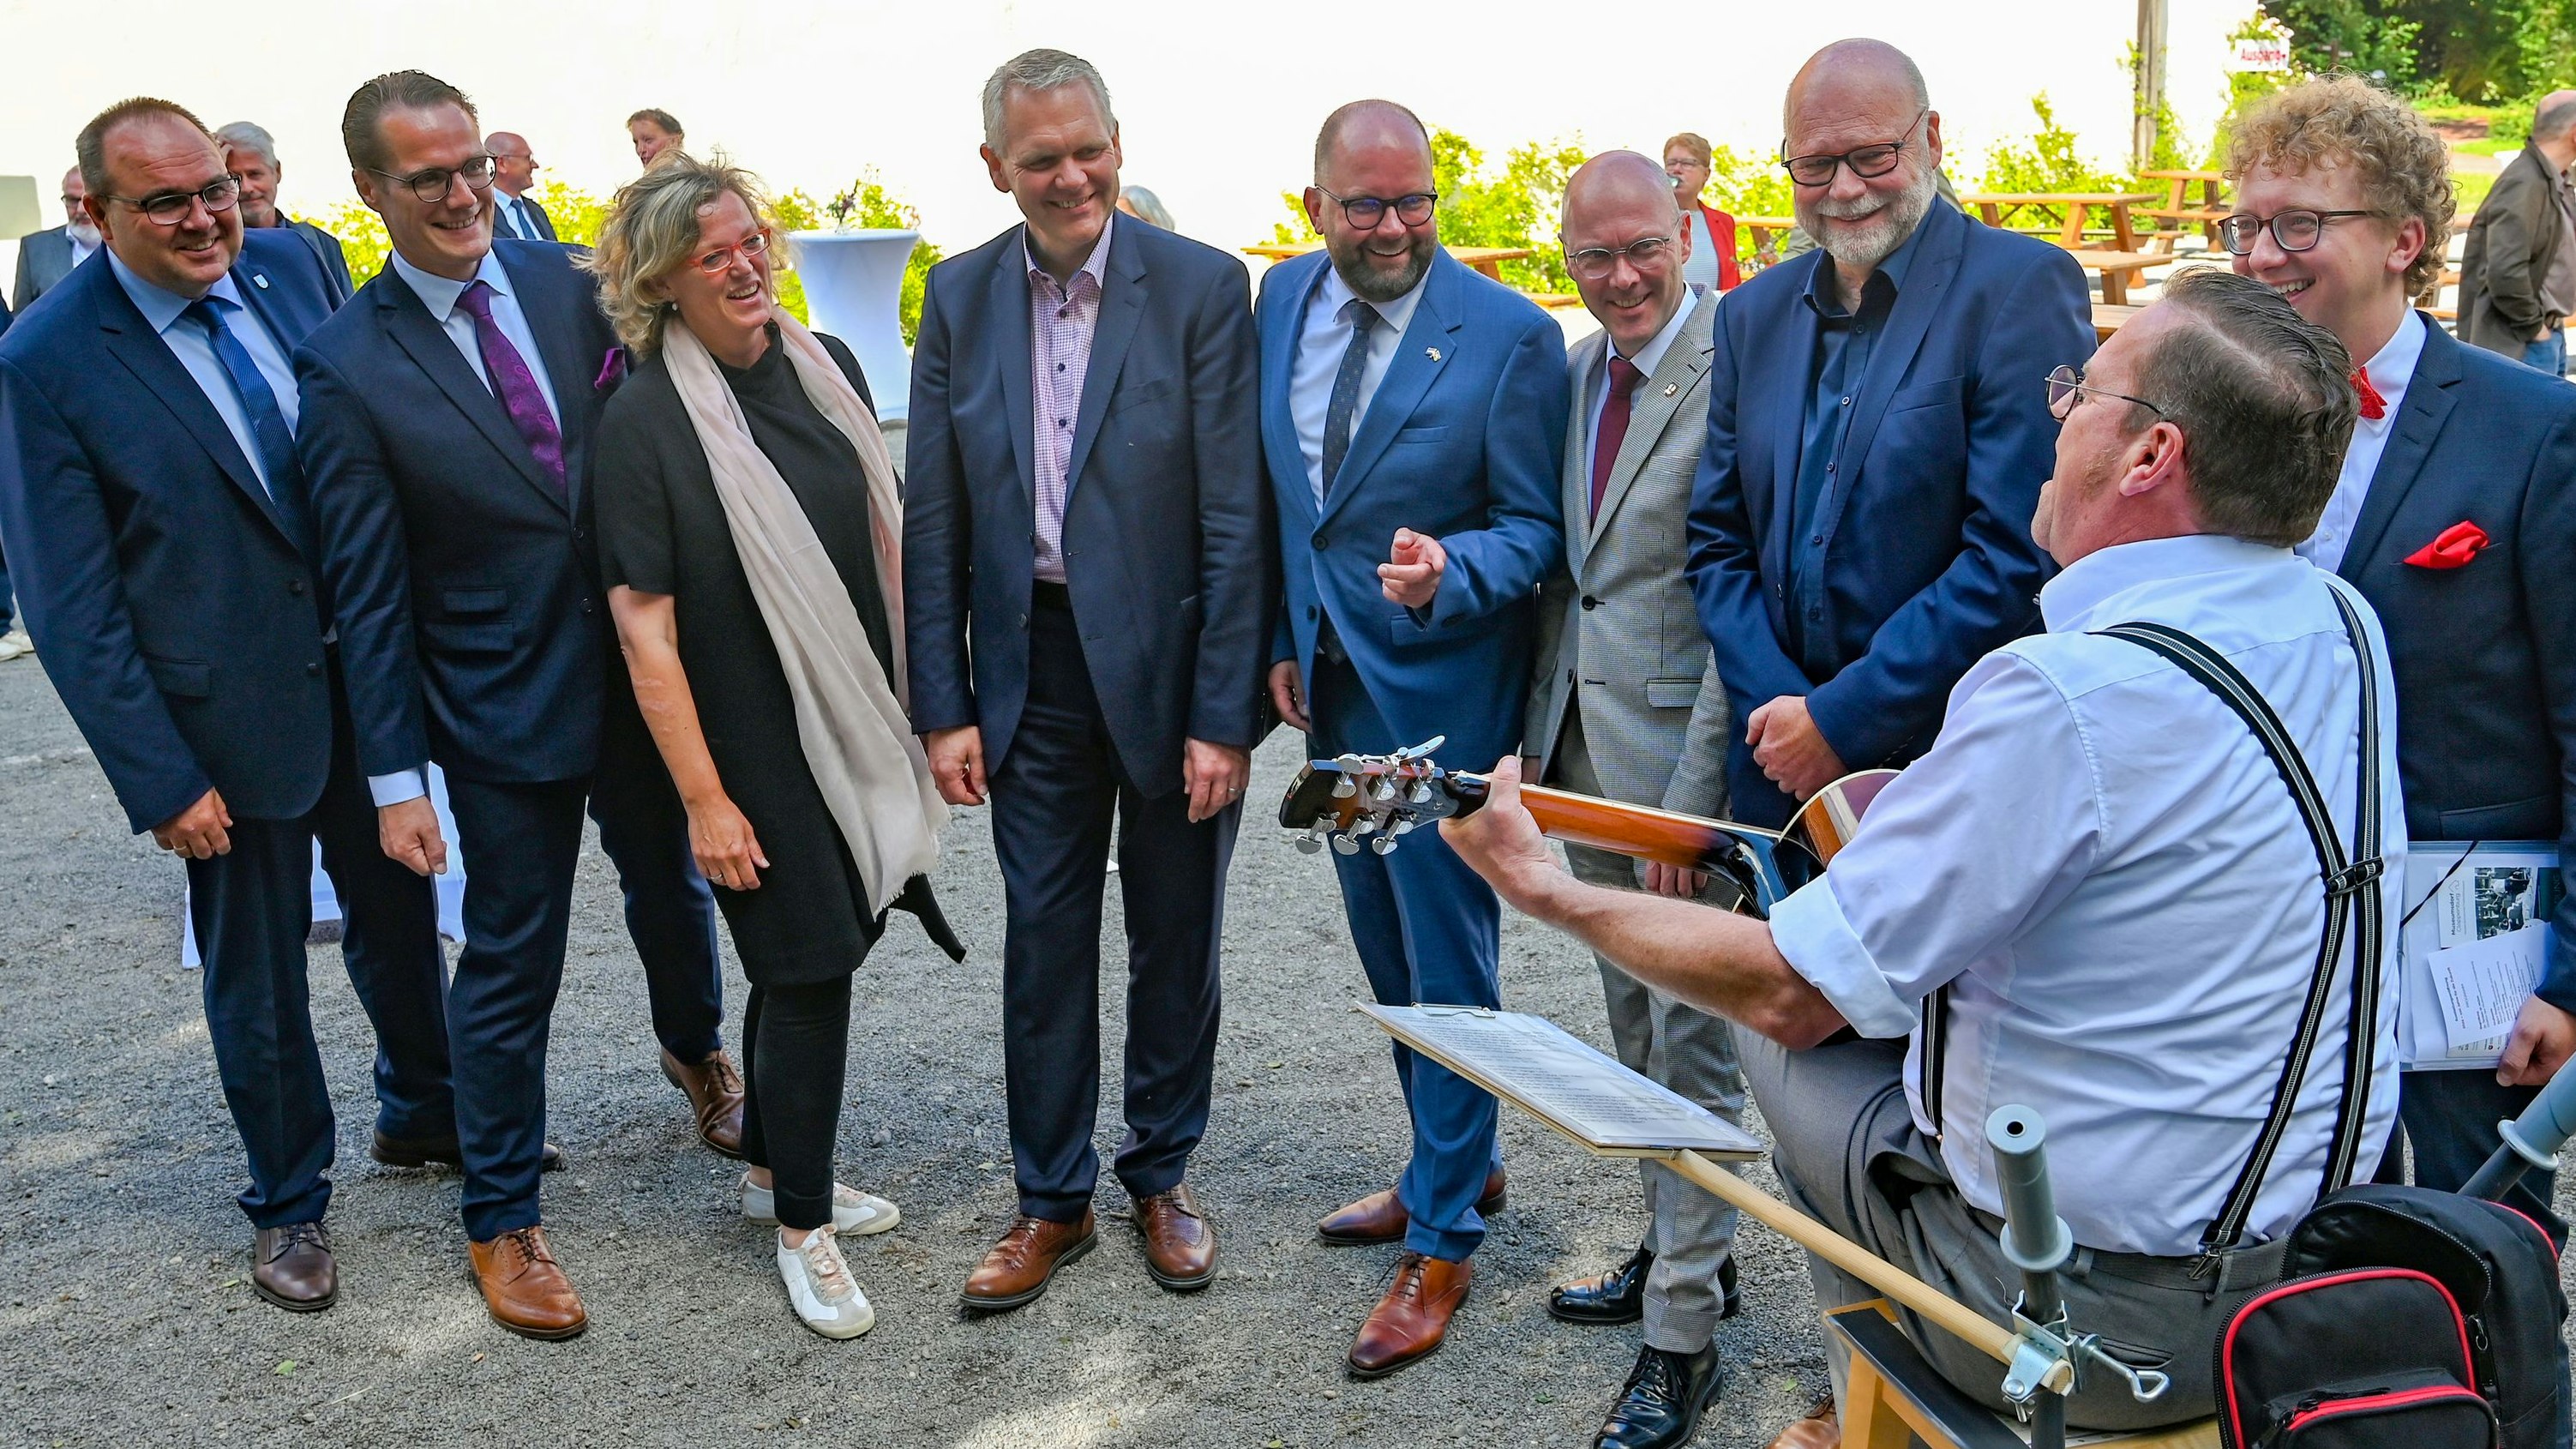 Jubiläumsfeier: Zahlreiche Ehrengäste wie Kultur- und Wissenschaftsminister Björn Thümler (4. von links) waren ins Museumsdorf gekommen. Foto: Hermes